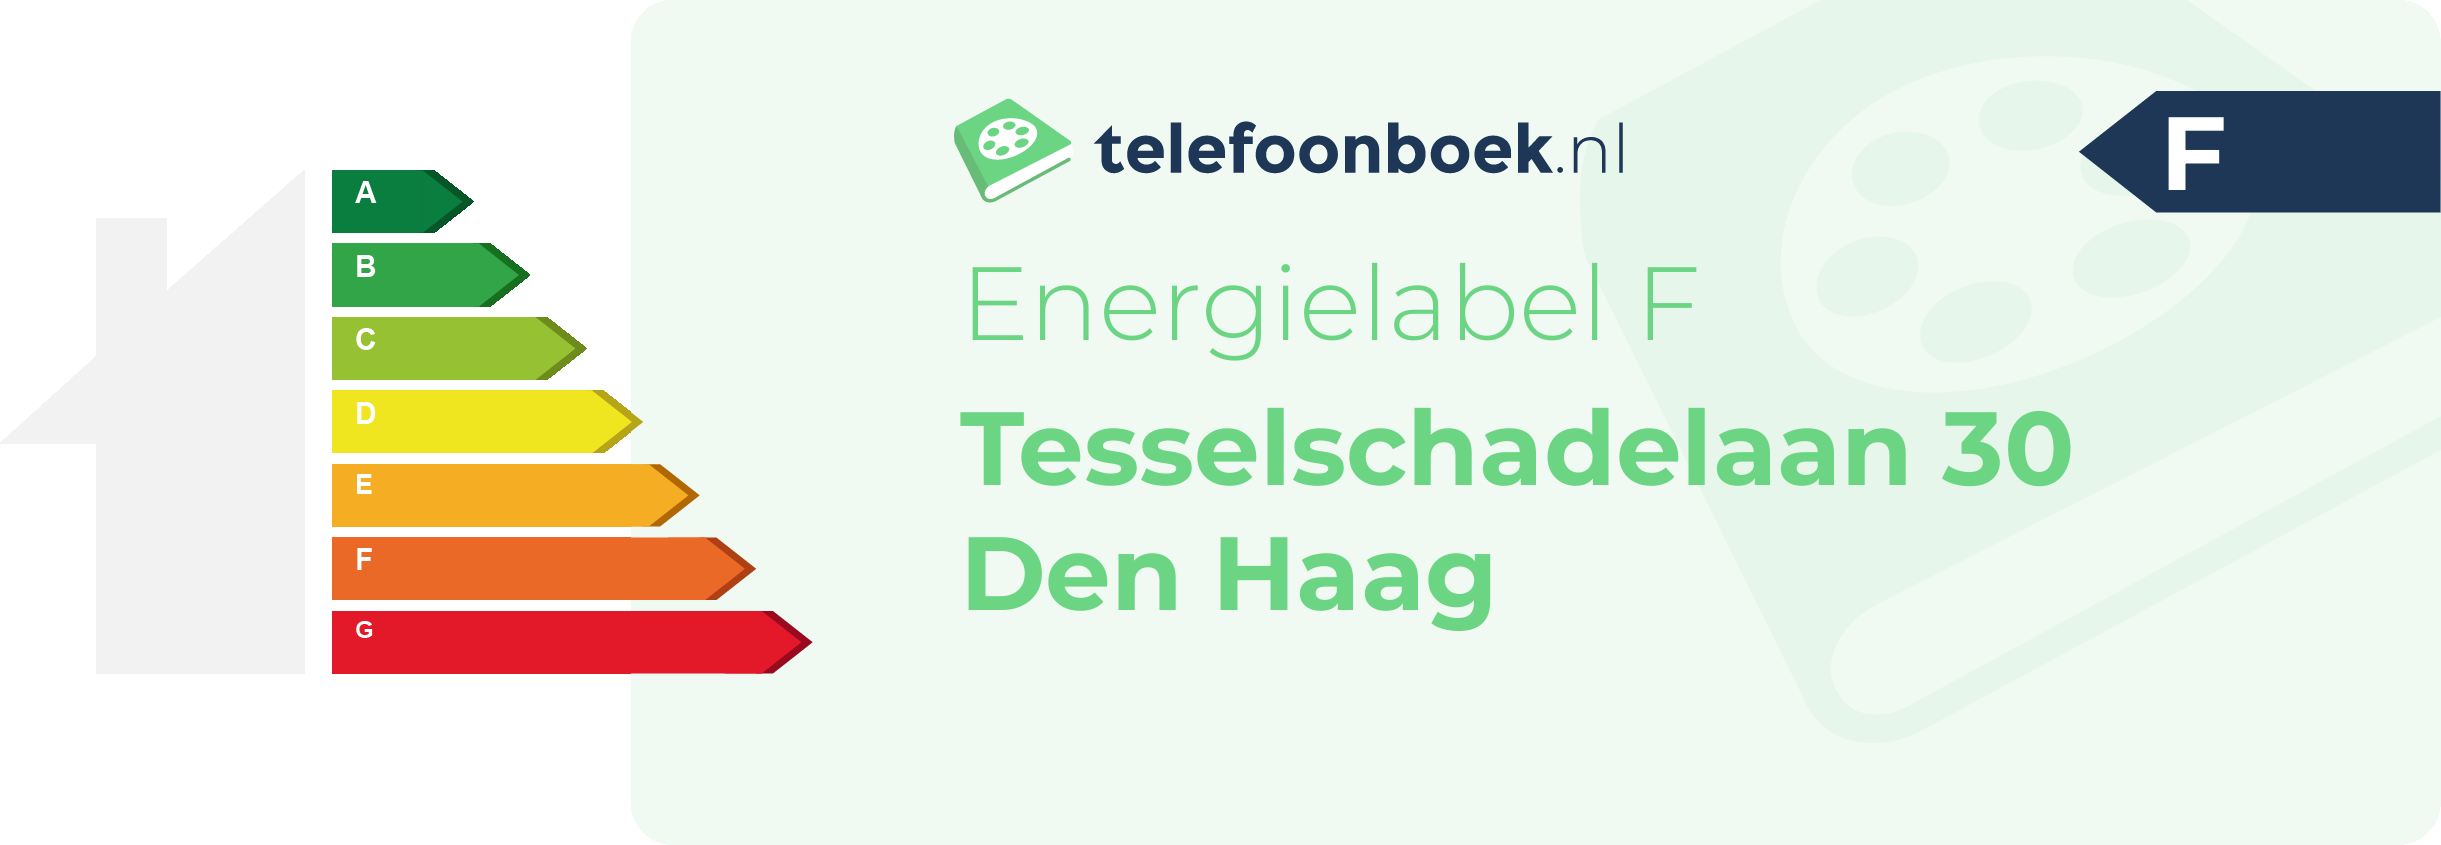 Energielabel Tesselschadelaan 30 Den Haag